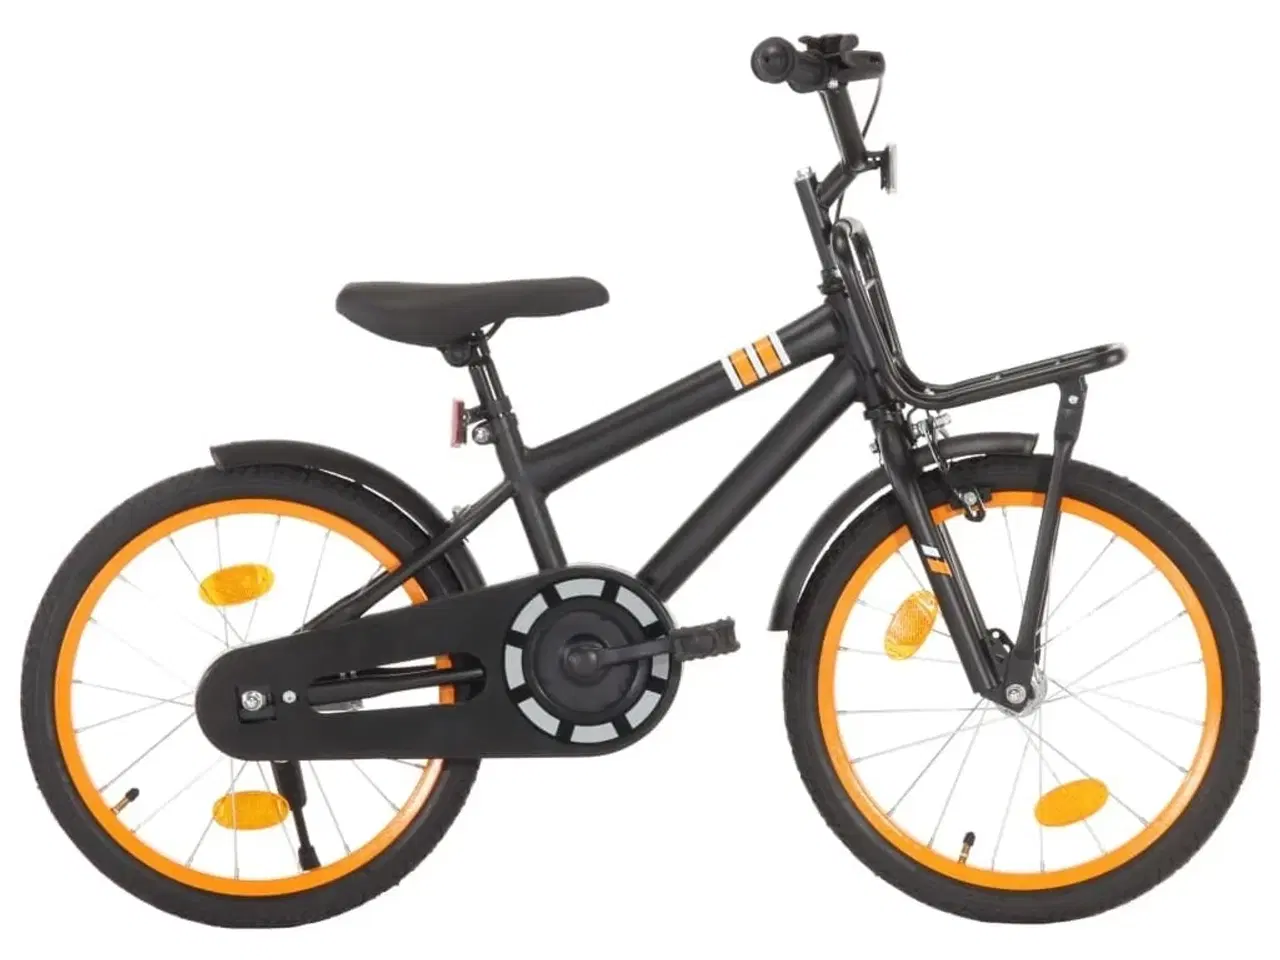 Billede 2 - Børnecykel med frontlad 18 tommer sort og orange